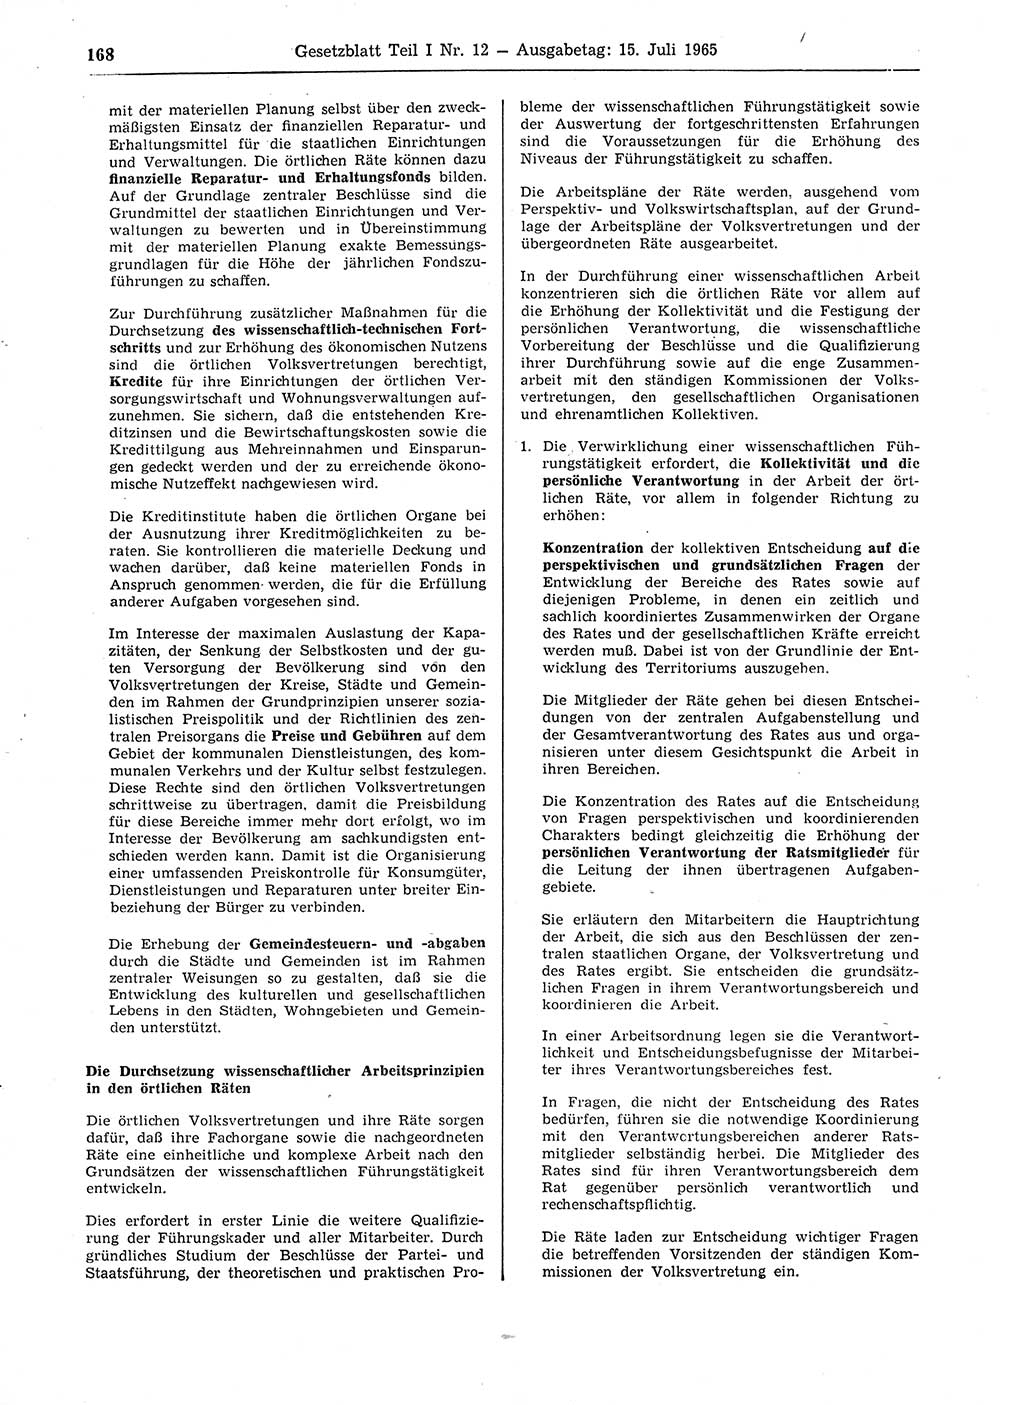 Gesetzblatt (GBl.) der Deutschen Demokratischen Republik (DDR) Teil Ⅰ 1965, Seite 168 (GBl. DDR Ⅰ 1965, S. 168)